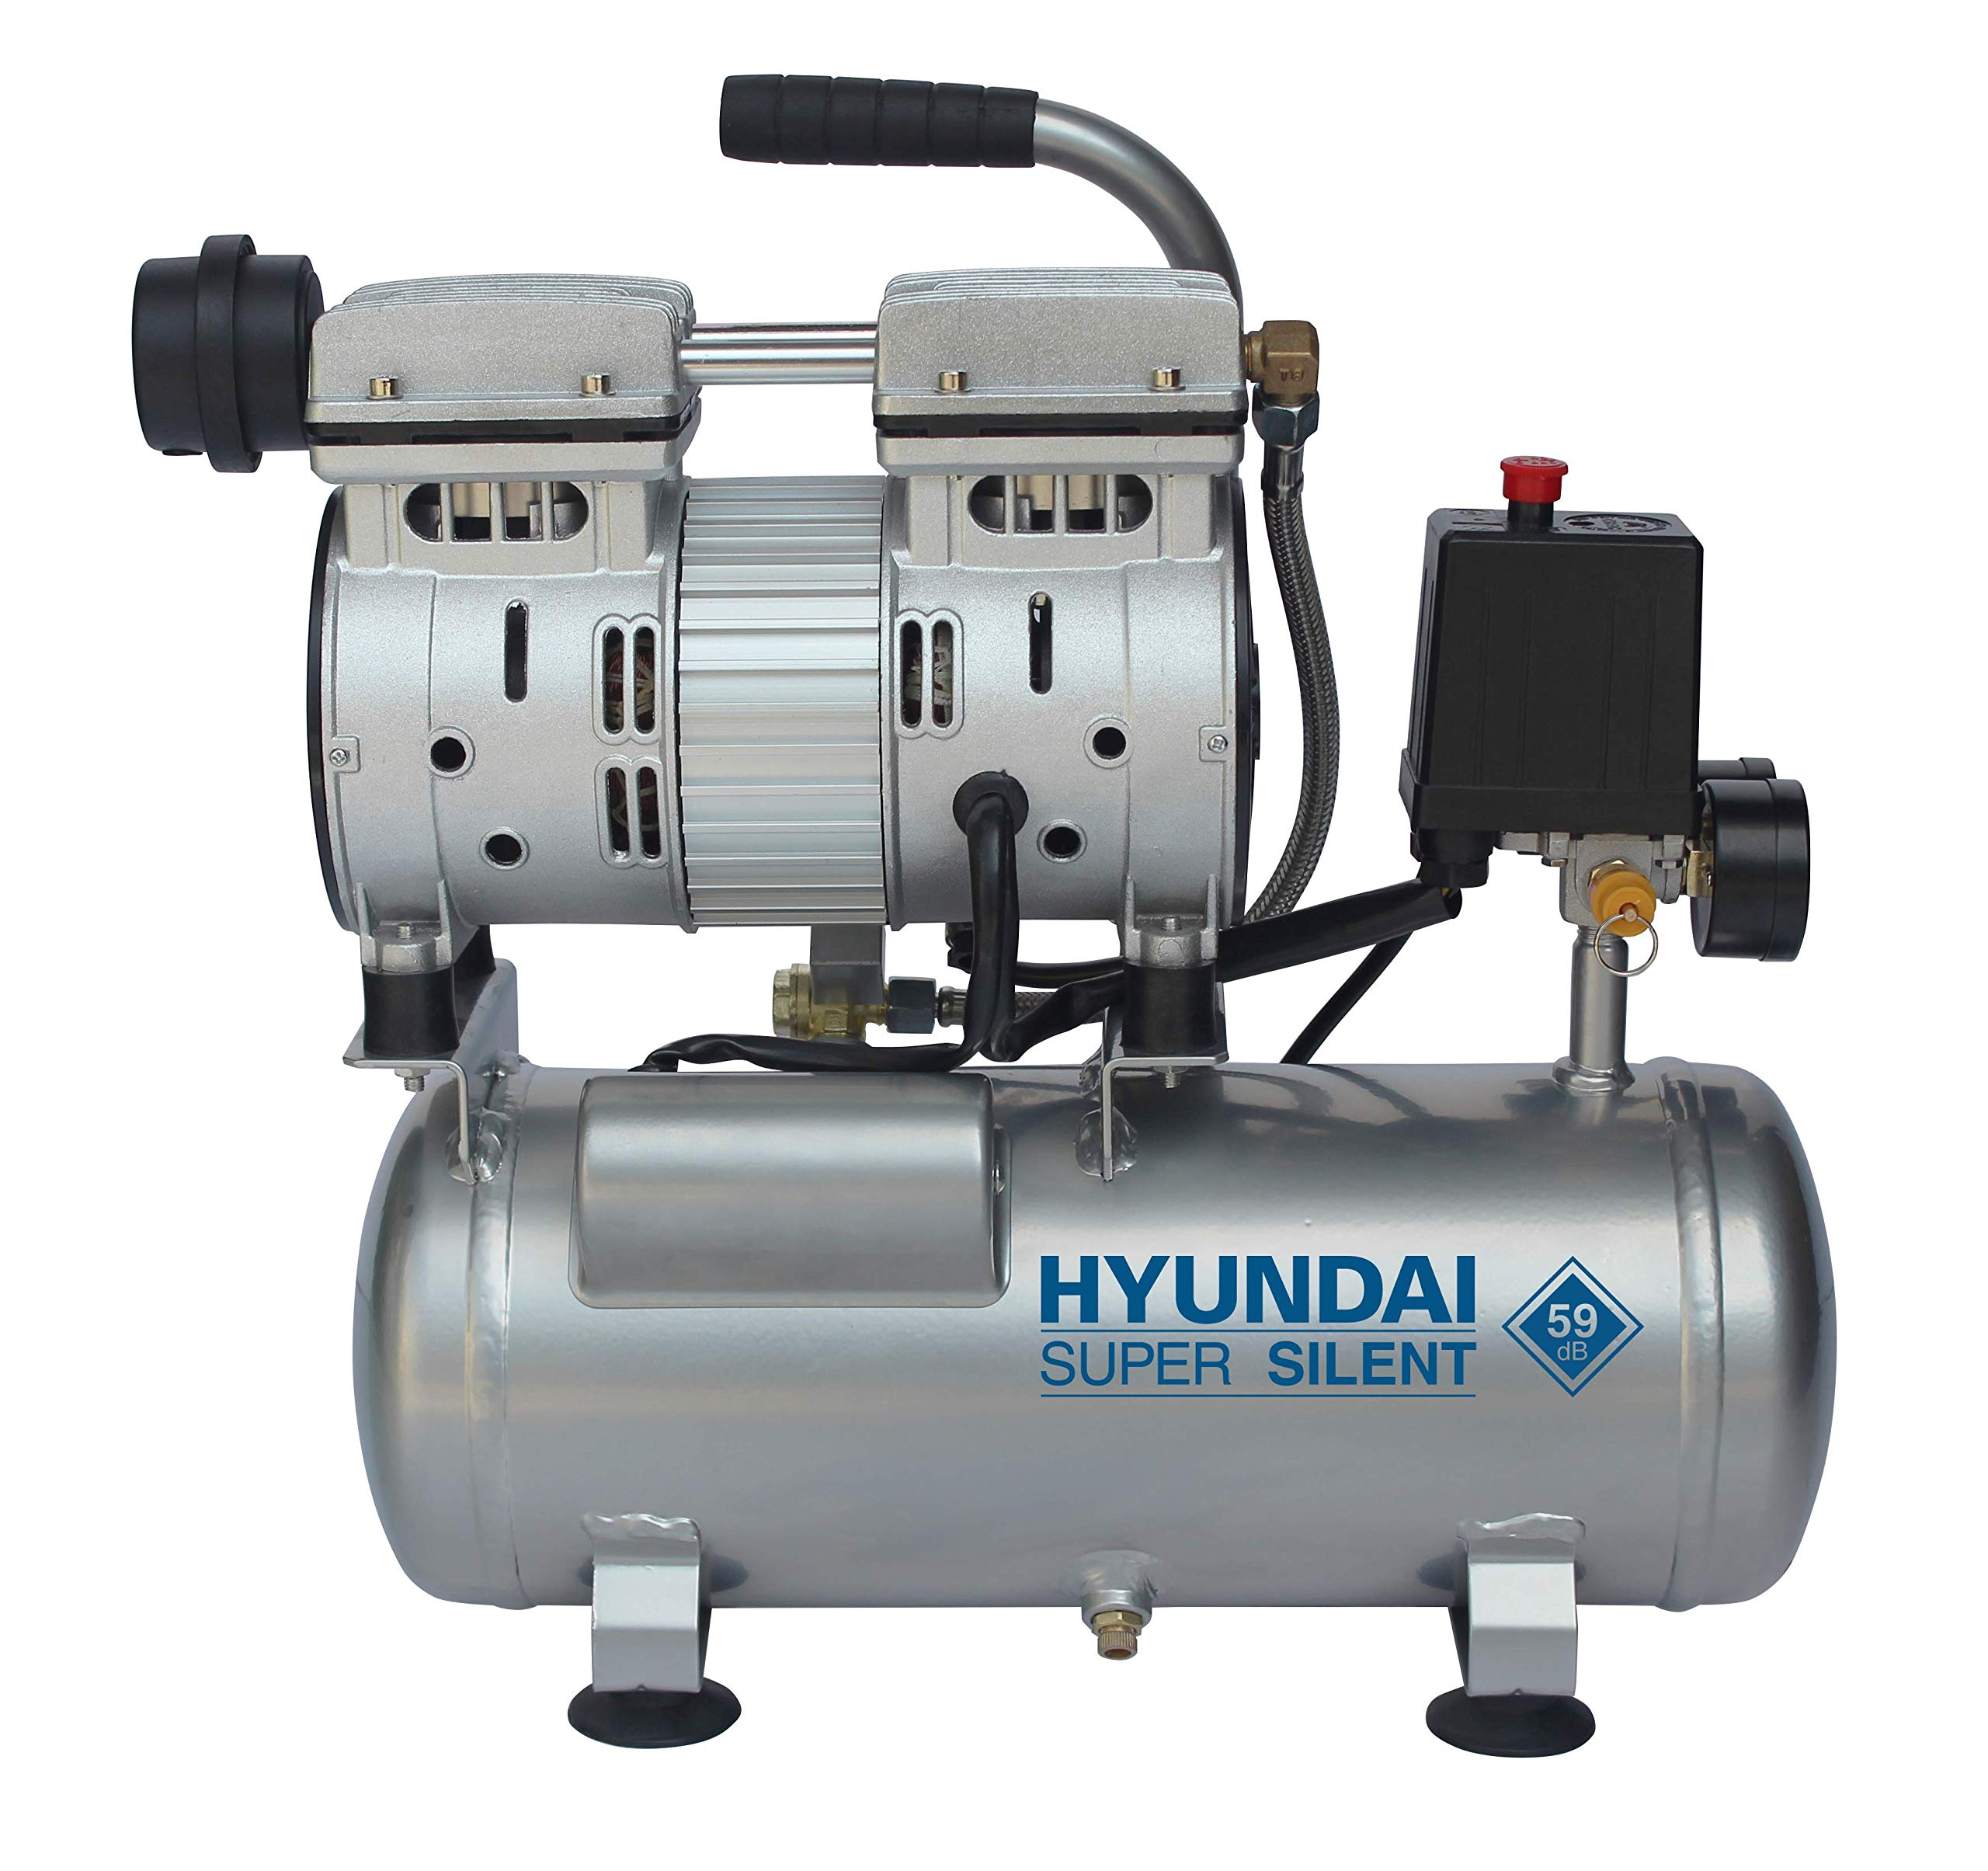 HYUNDAI Silent Kompressor SAC55751 (Druckluftkompressor tragbar klein kompakt leise, ölfrei, Flüsterkompressor, Compressor flüsterleise 59dB, 6L Kessel, 8bar, 550W, Ansaugleistung 93 L/Min)